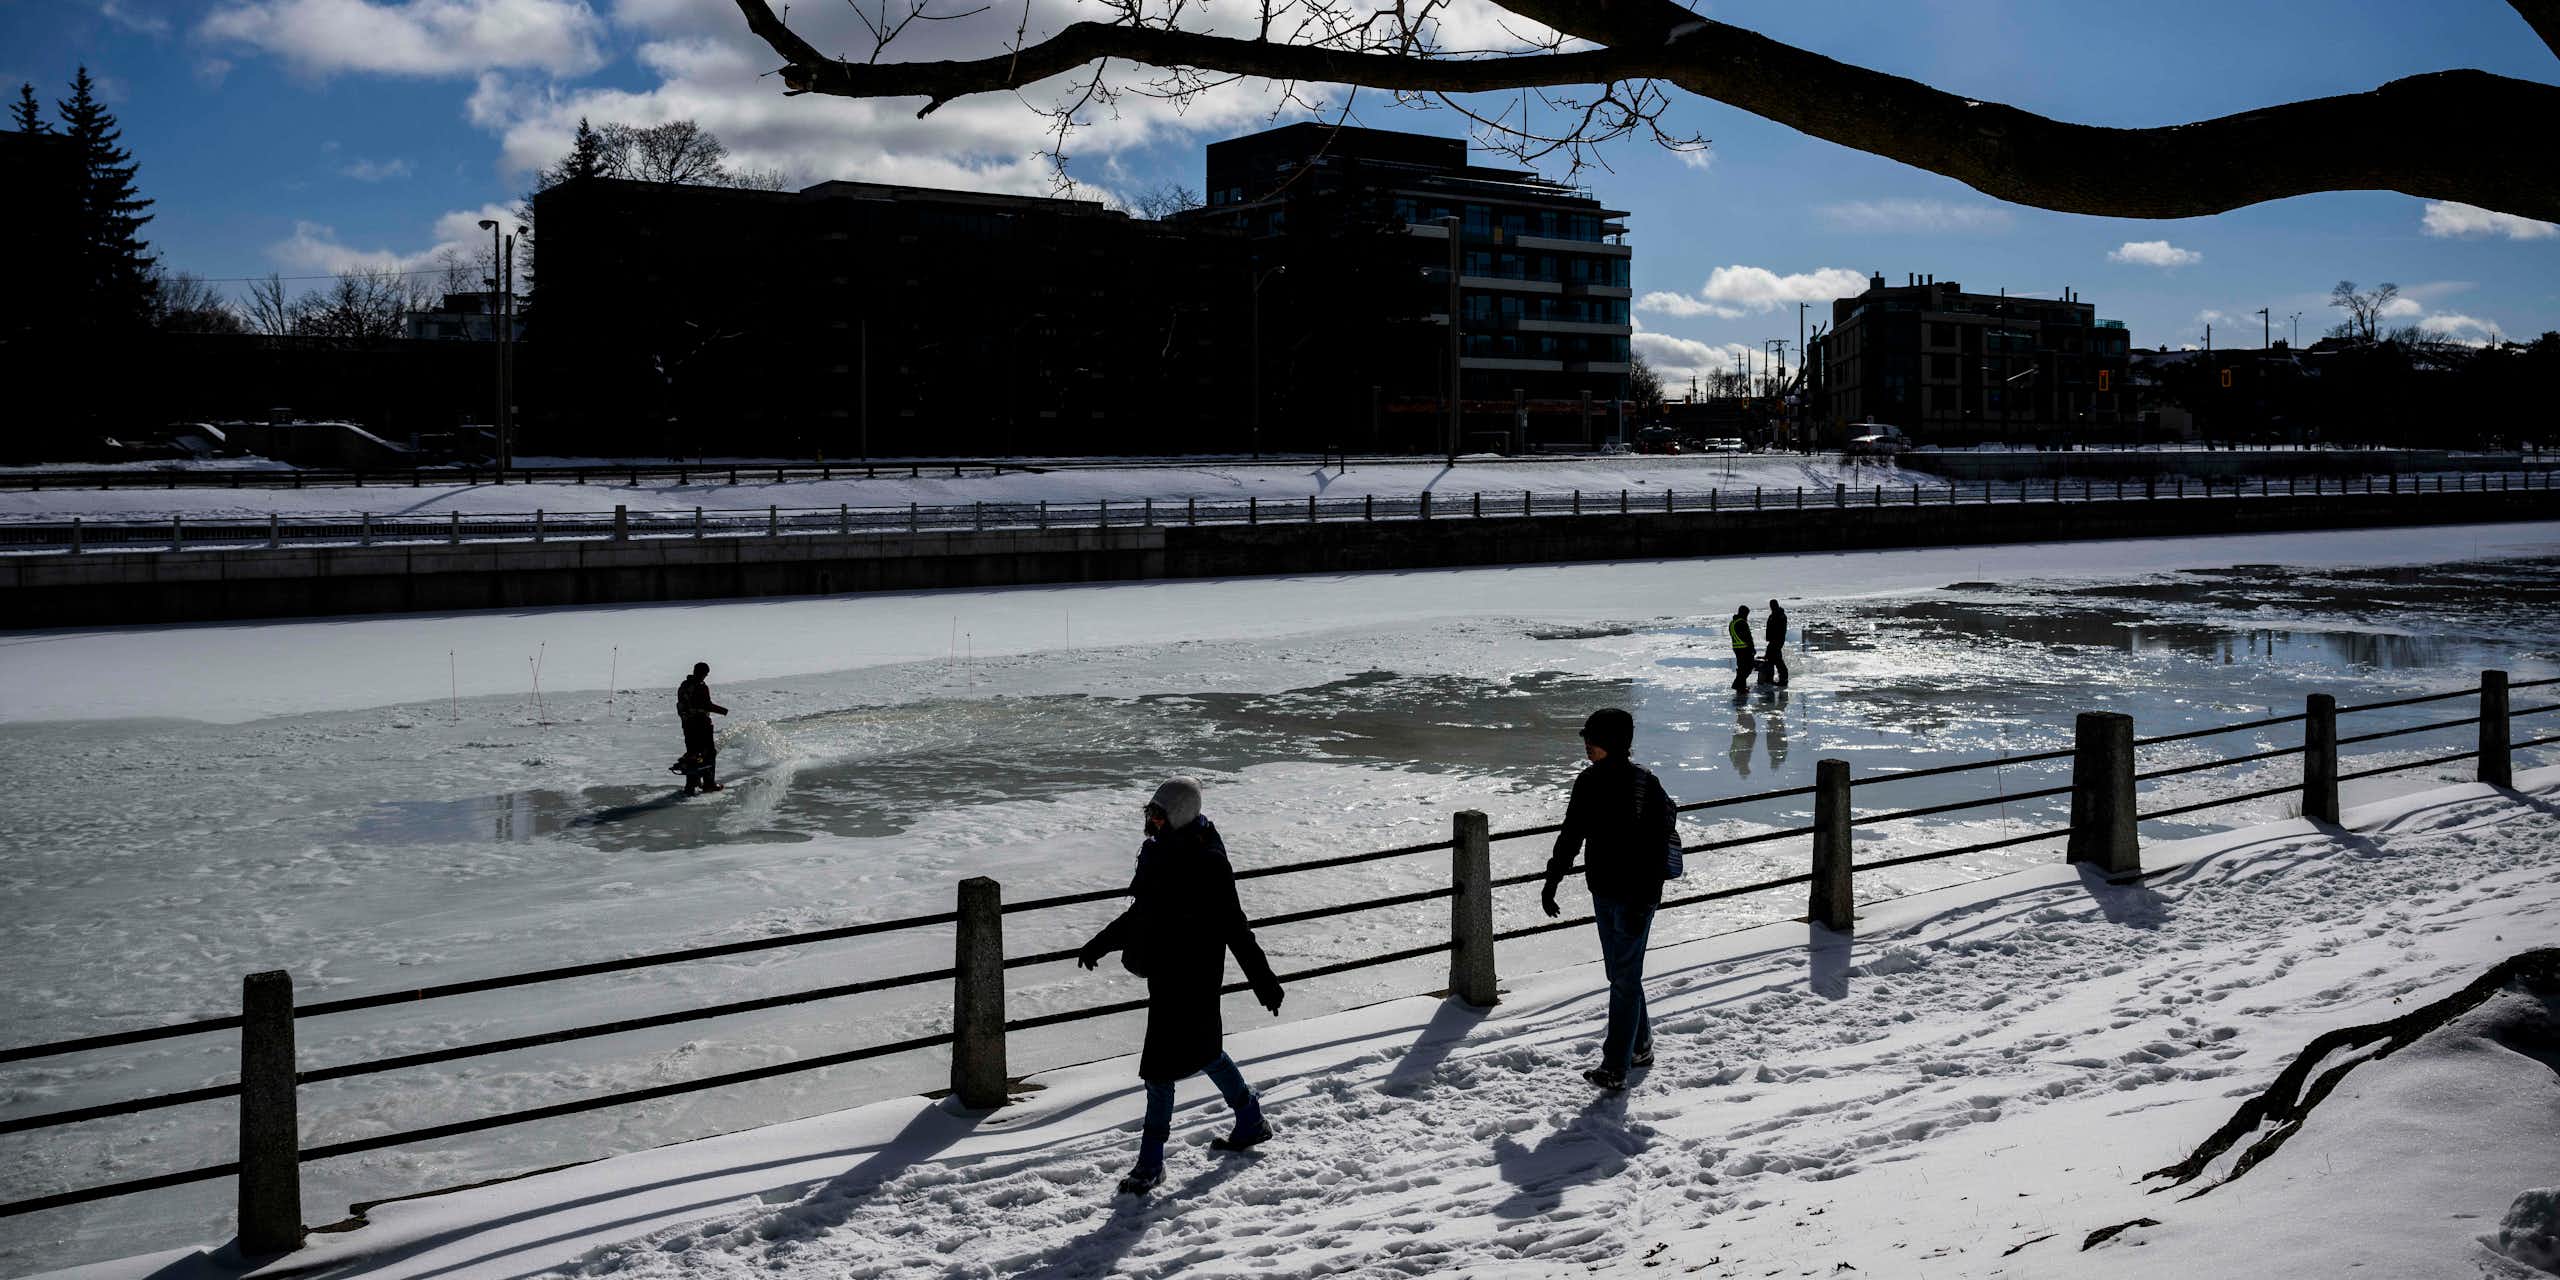 Des personnes marchent le long d'un canal partiellement gelé sous un ciel ensoleillé.